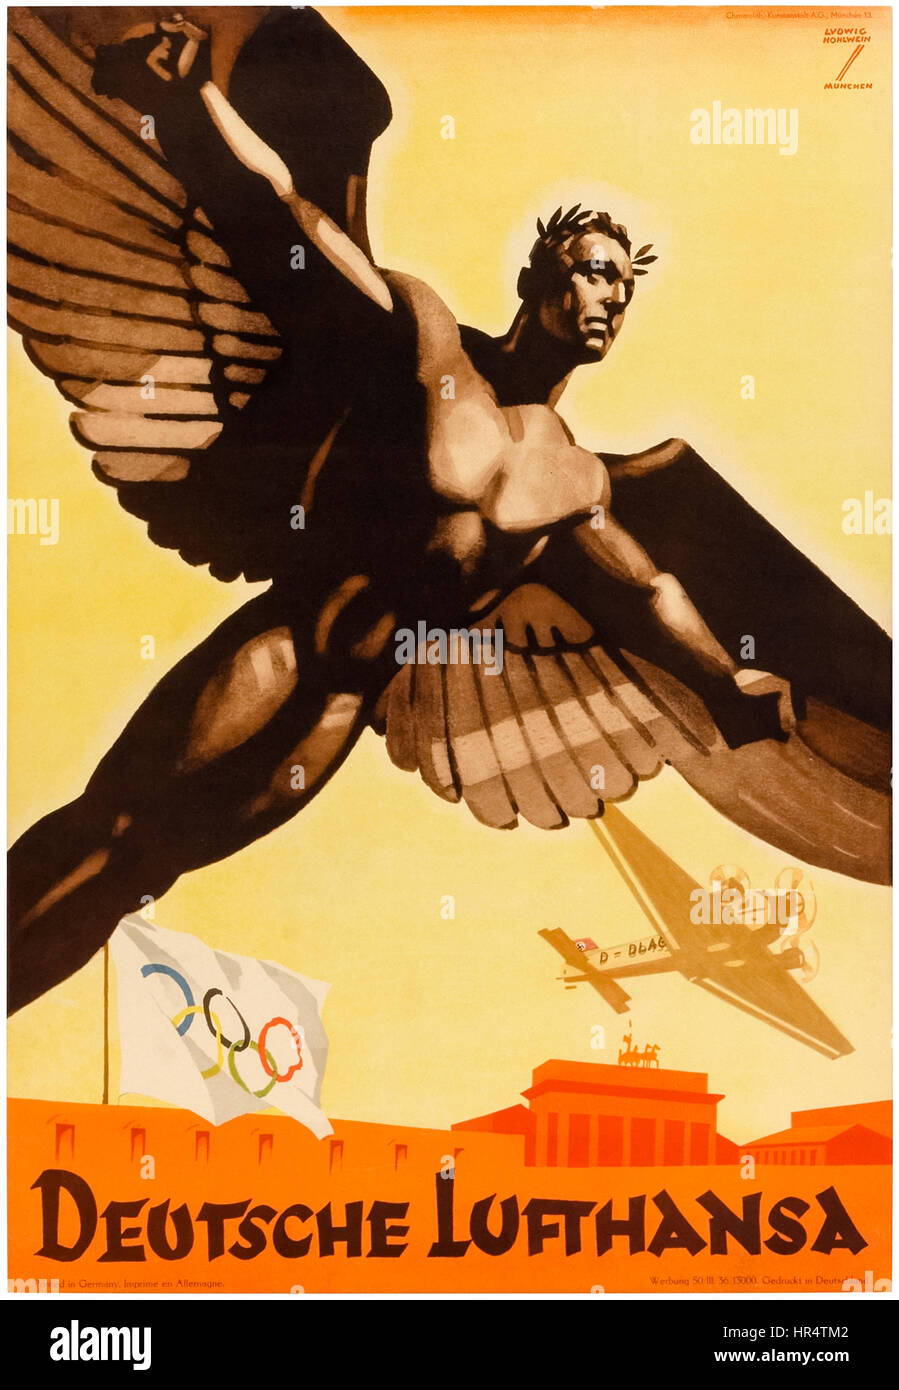 "Deutsche Lufthansa" poster per le compagnie aeree tedesche promuovere il 1936 Giochi Olimpici nella Germania nazista, nota il parzialmente oscurata swastika sulla tailfin degli aerei volando a bassa quota sopra la Porta di Brandeburgo. Artwork dal prolifico artista Ludwig Hohlwein (1874-1949). Foto Stock